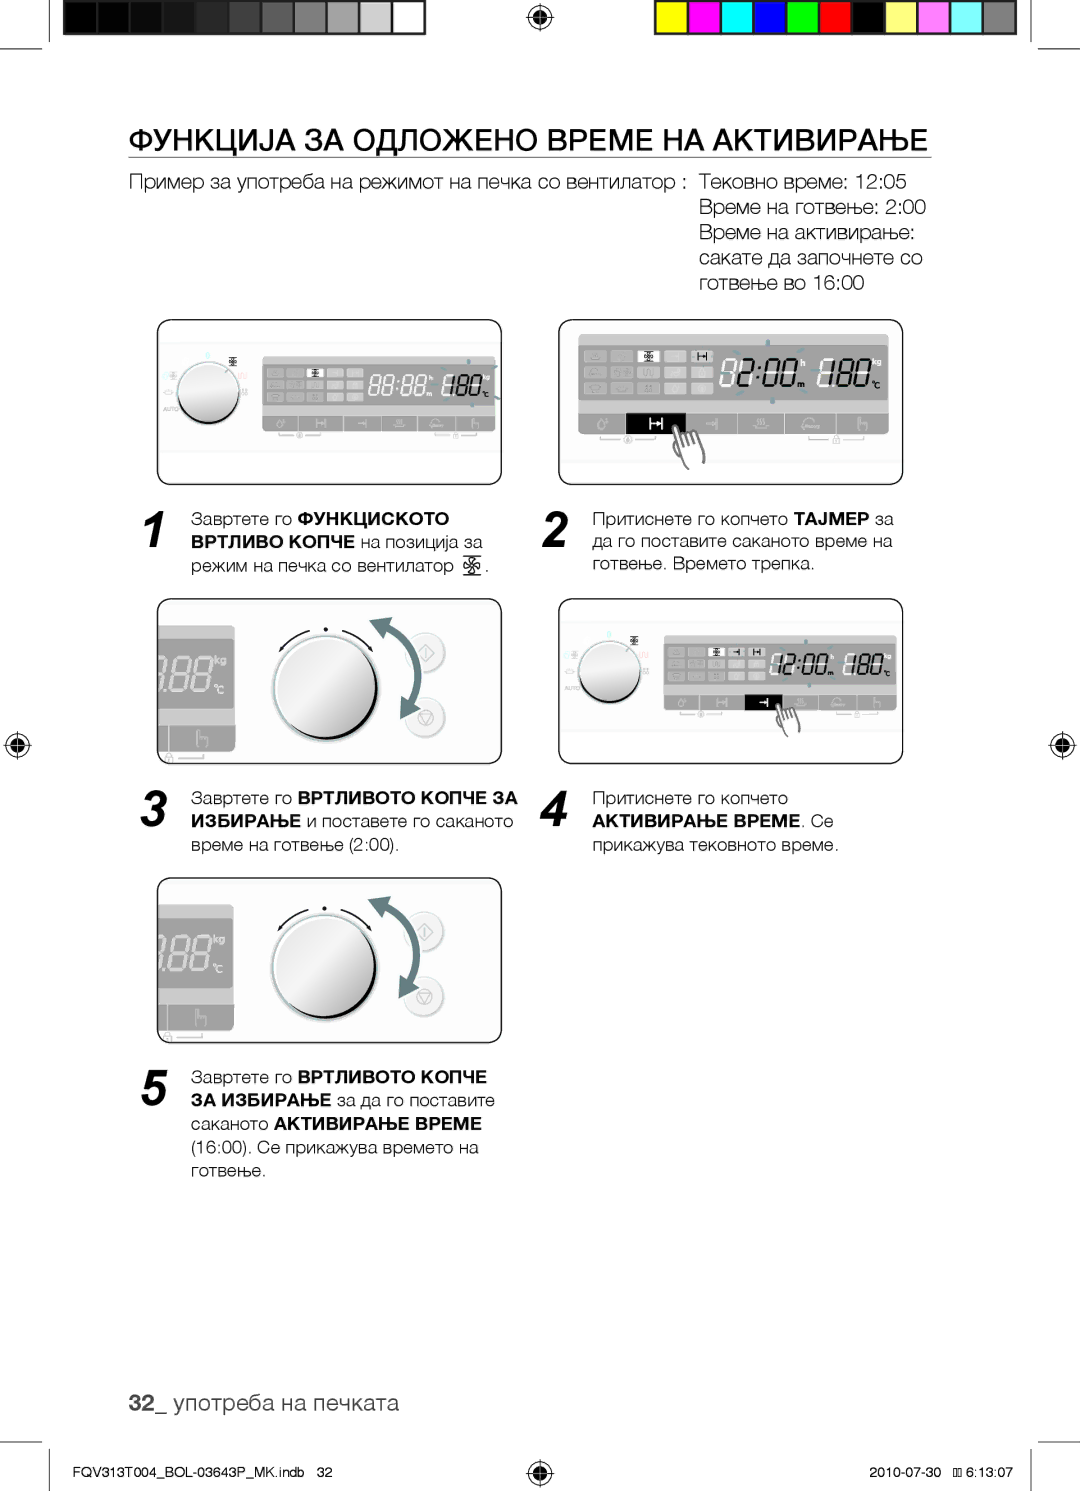 Samsung FQV313T004/BOL Функција за одложено време на активирање, 32 употреба на печката, Завртете го Вртливото Копче ЗА 